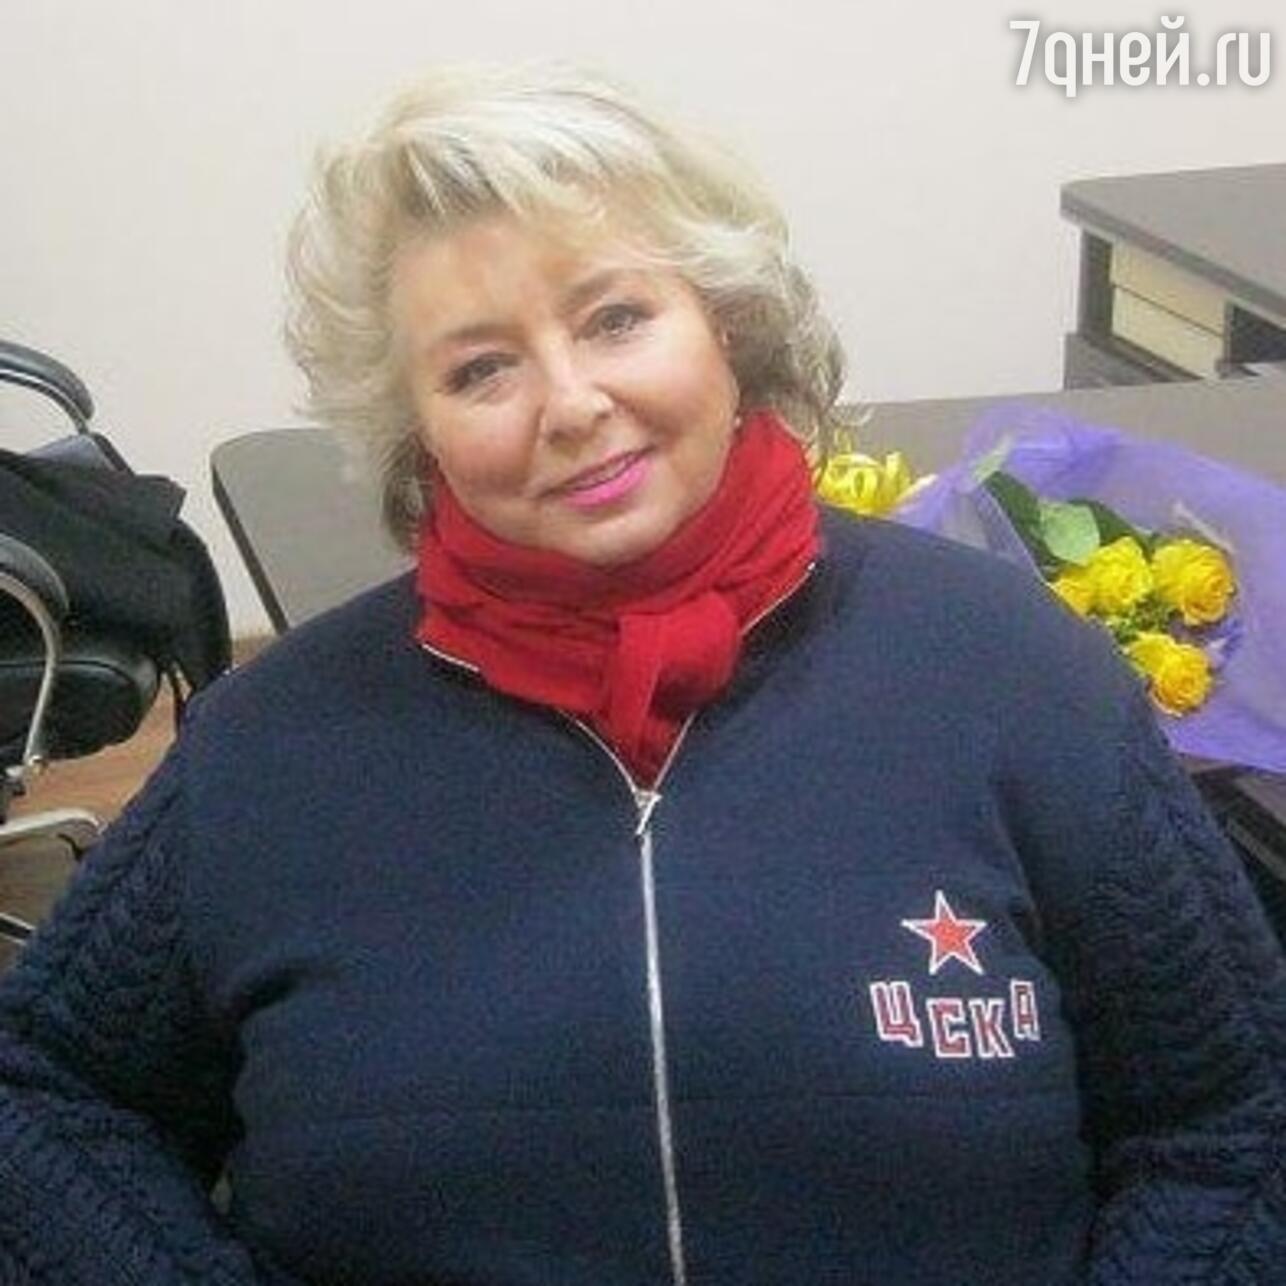 Татьяна Тарасова 2020